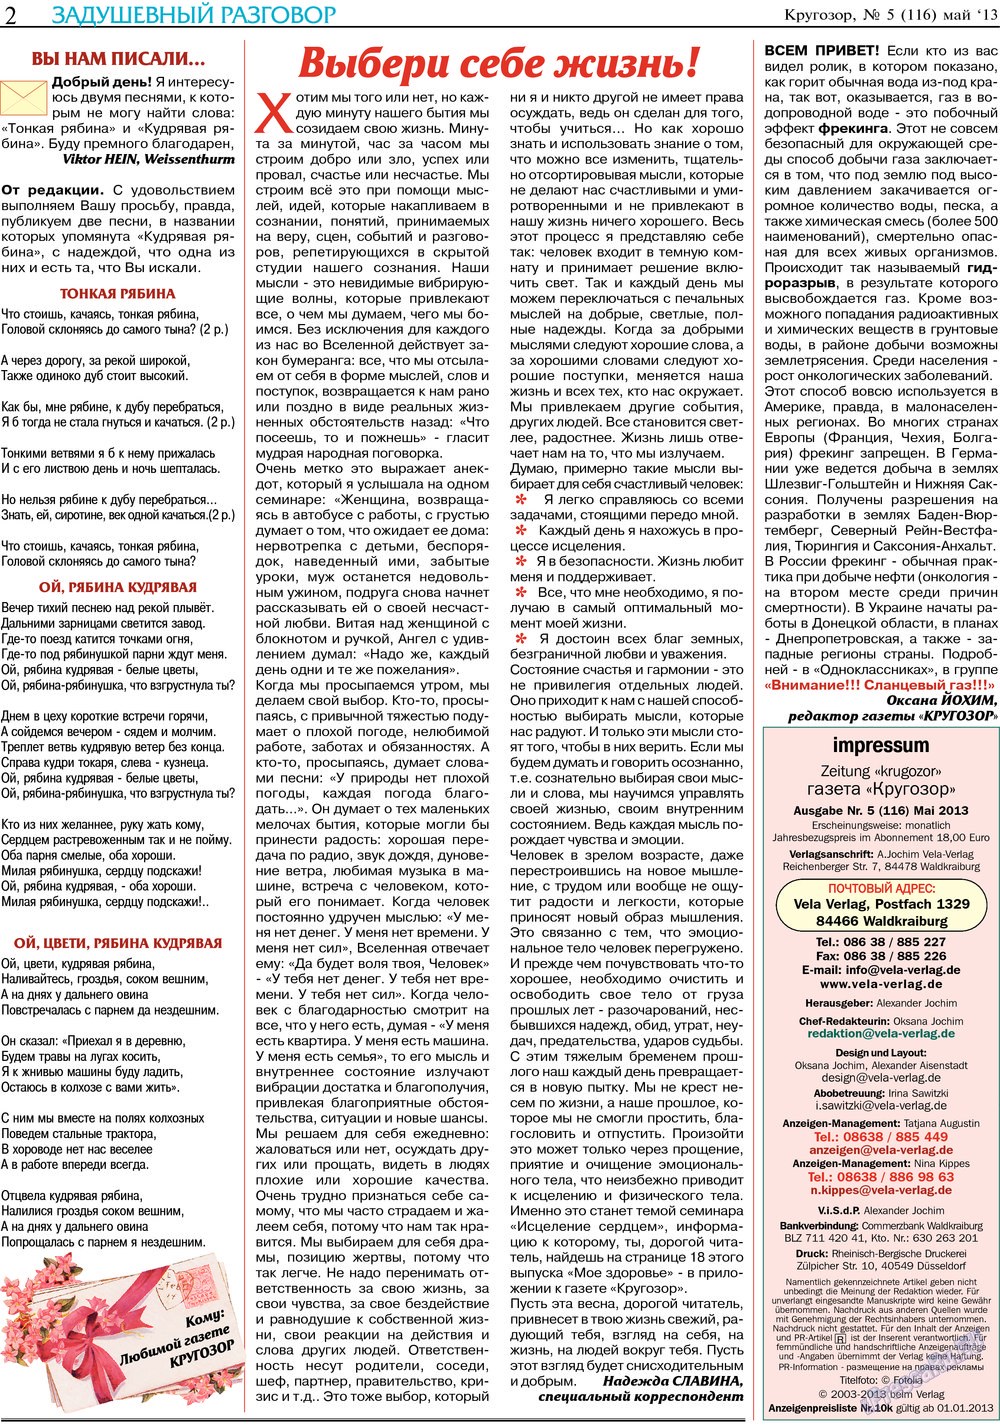 Кругозор, газета. 2013 №5 стр.2